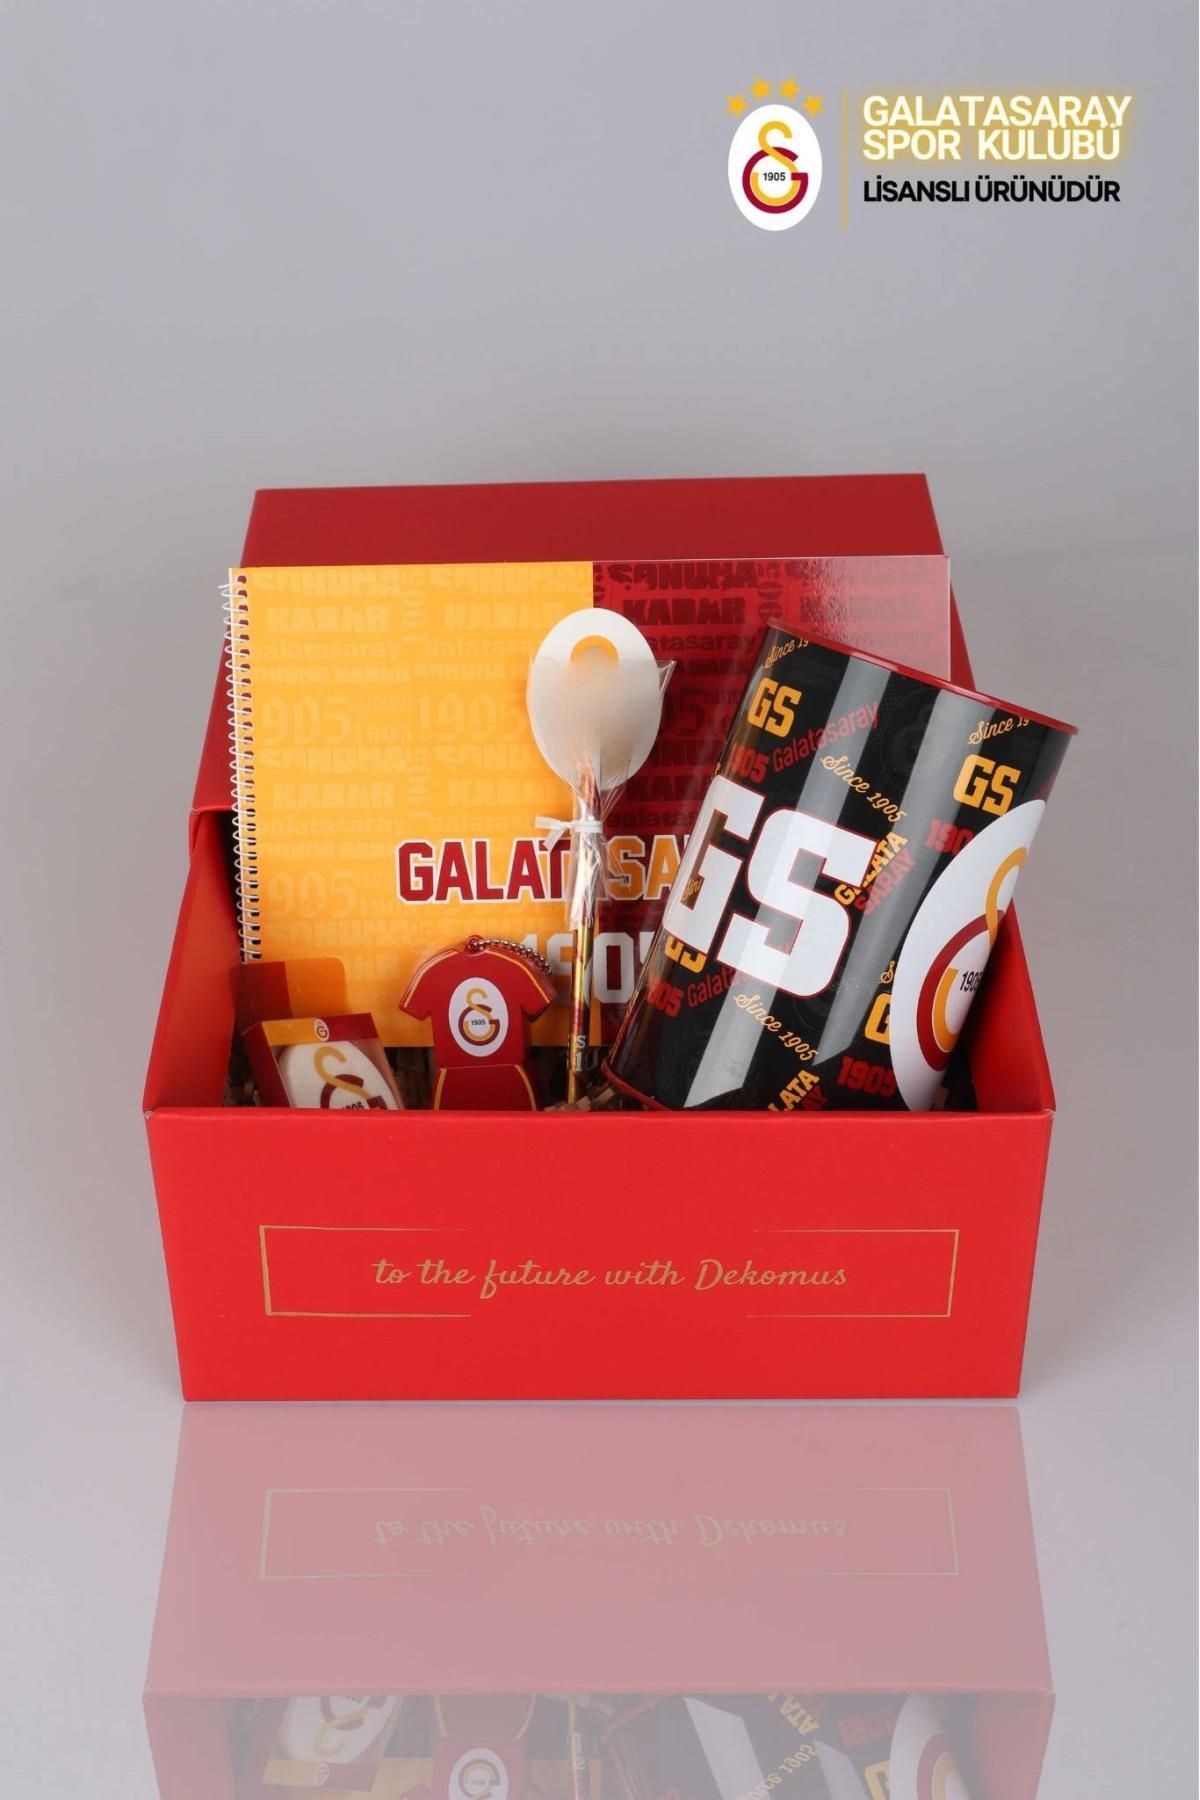 Galatasaray Dekomus Gıft Box Özel Kutulu Lisanslı Kırtasiye Seti